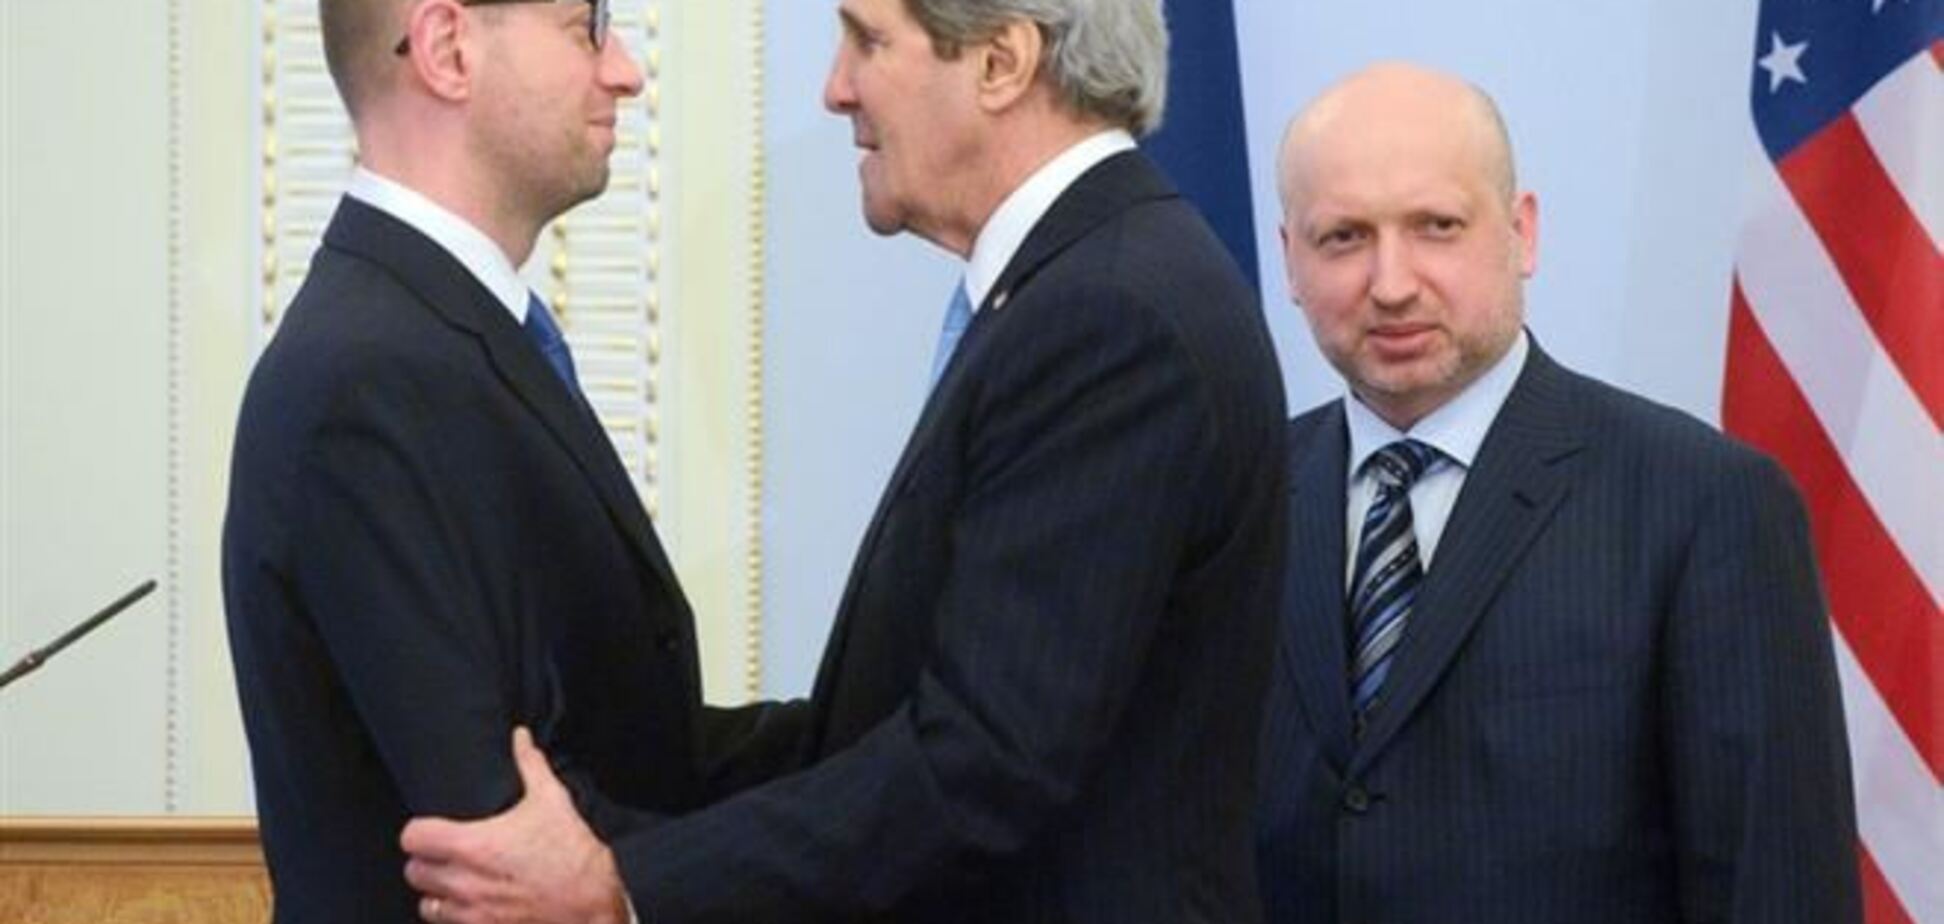 Яценюк анонсировал начало переговоров США и Украины по финпомощи